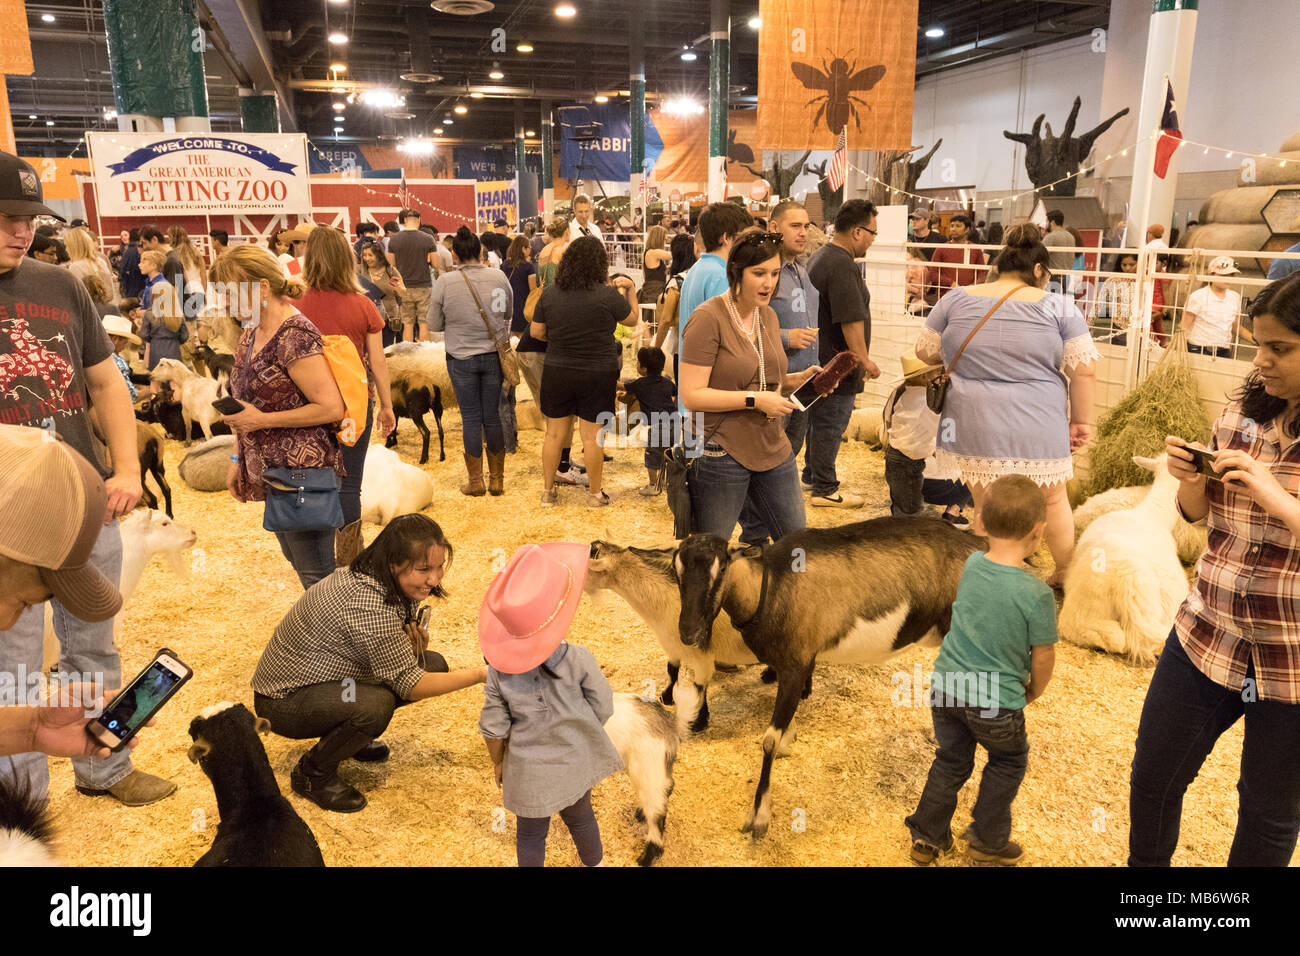 Les parents, les jeunes enfants et les animaux dans le zoo pour enfants, Houston Livestock Show and Rodeo, Houston, Texas USA Banque D'Images